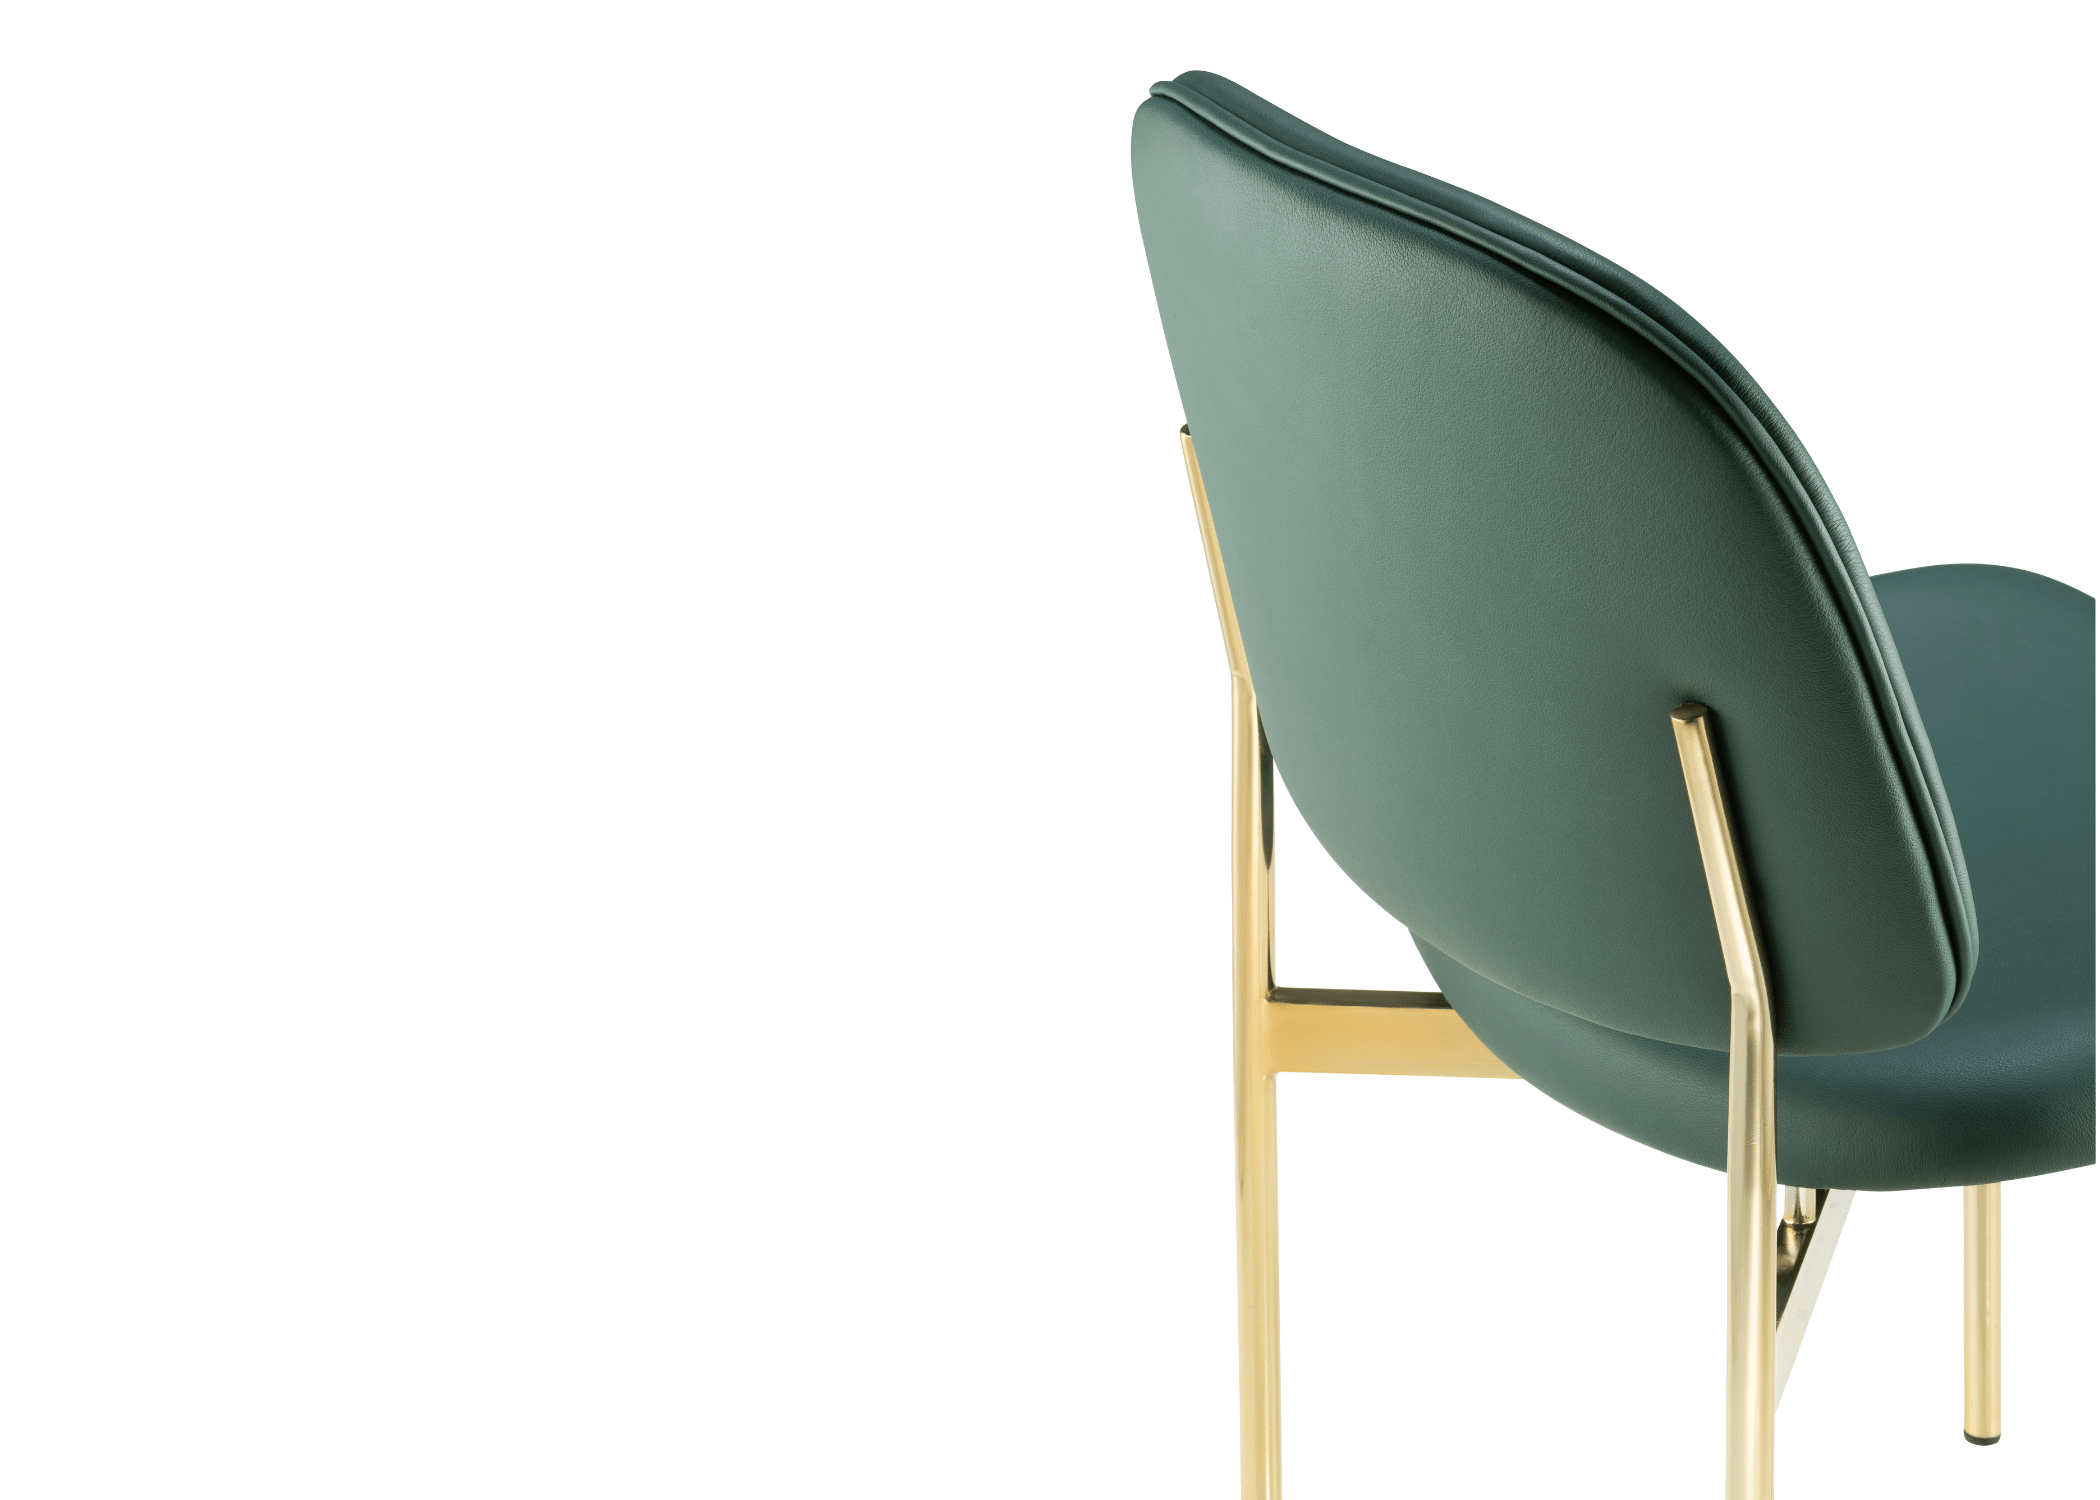 Base em aço carbono pintado: durabilidade e estilo na Cadeira Malta.